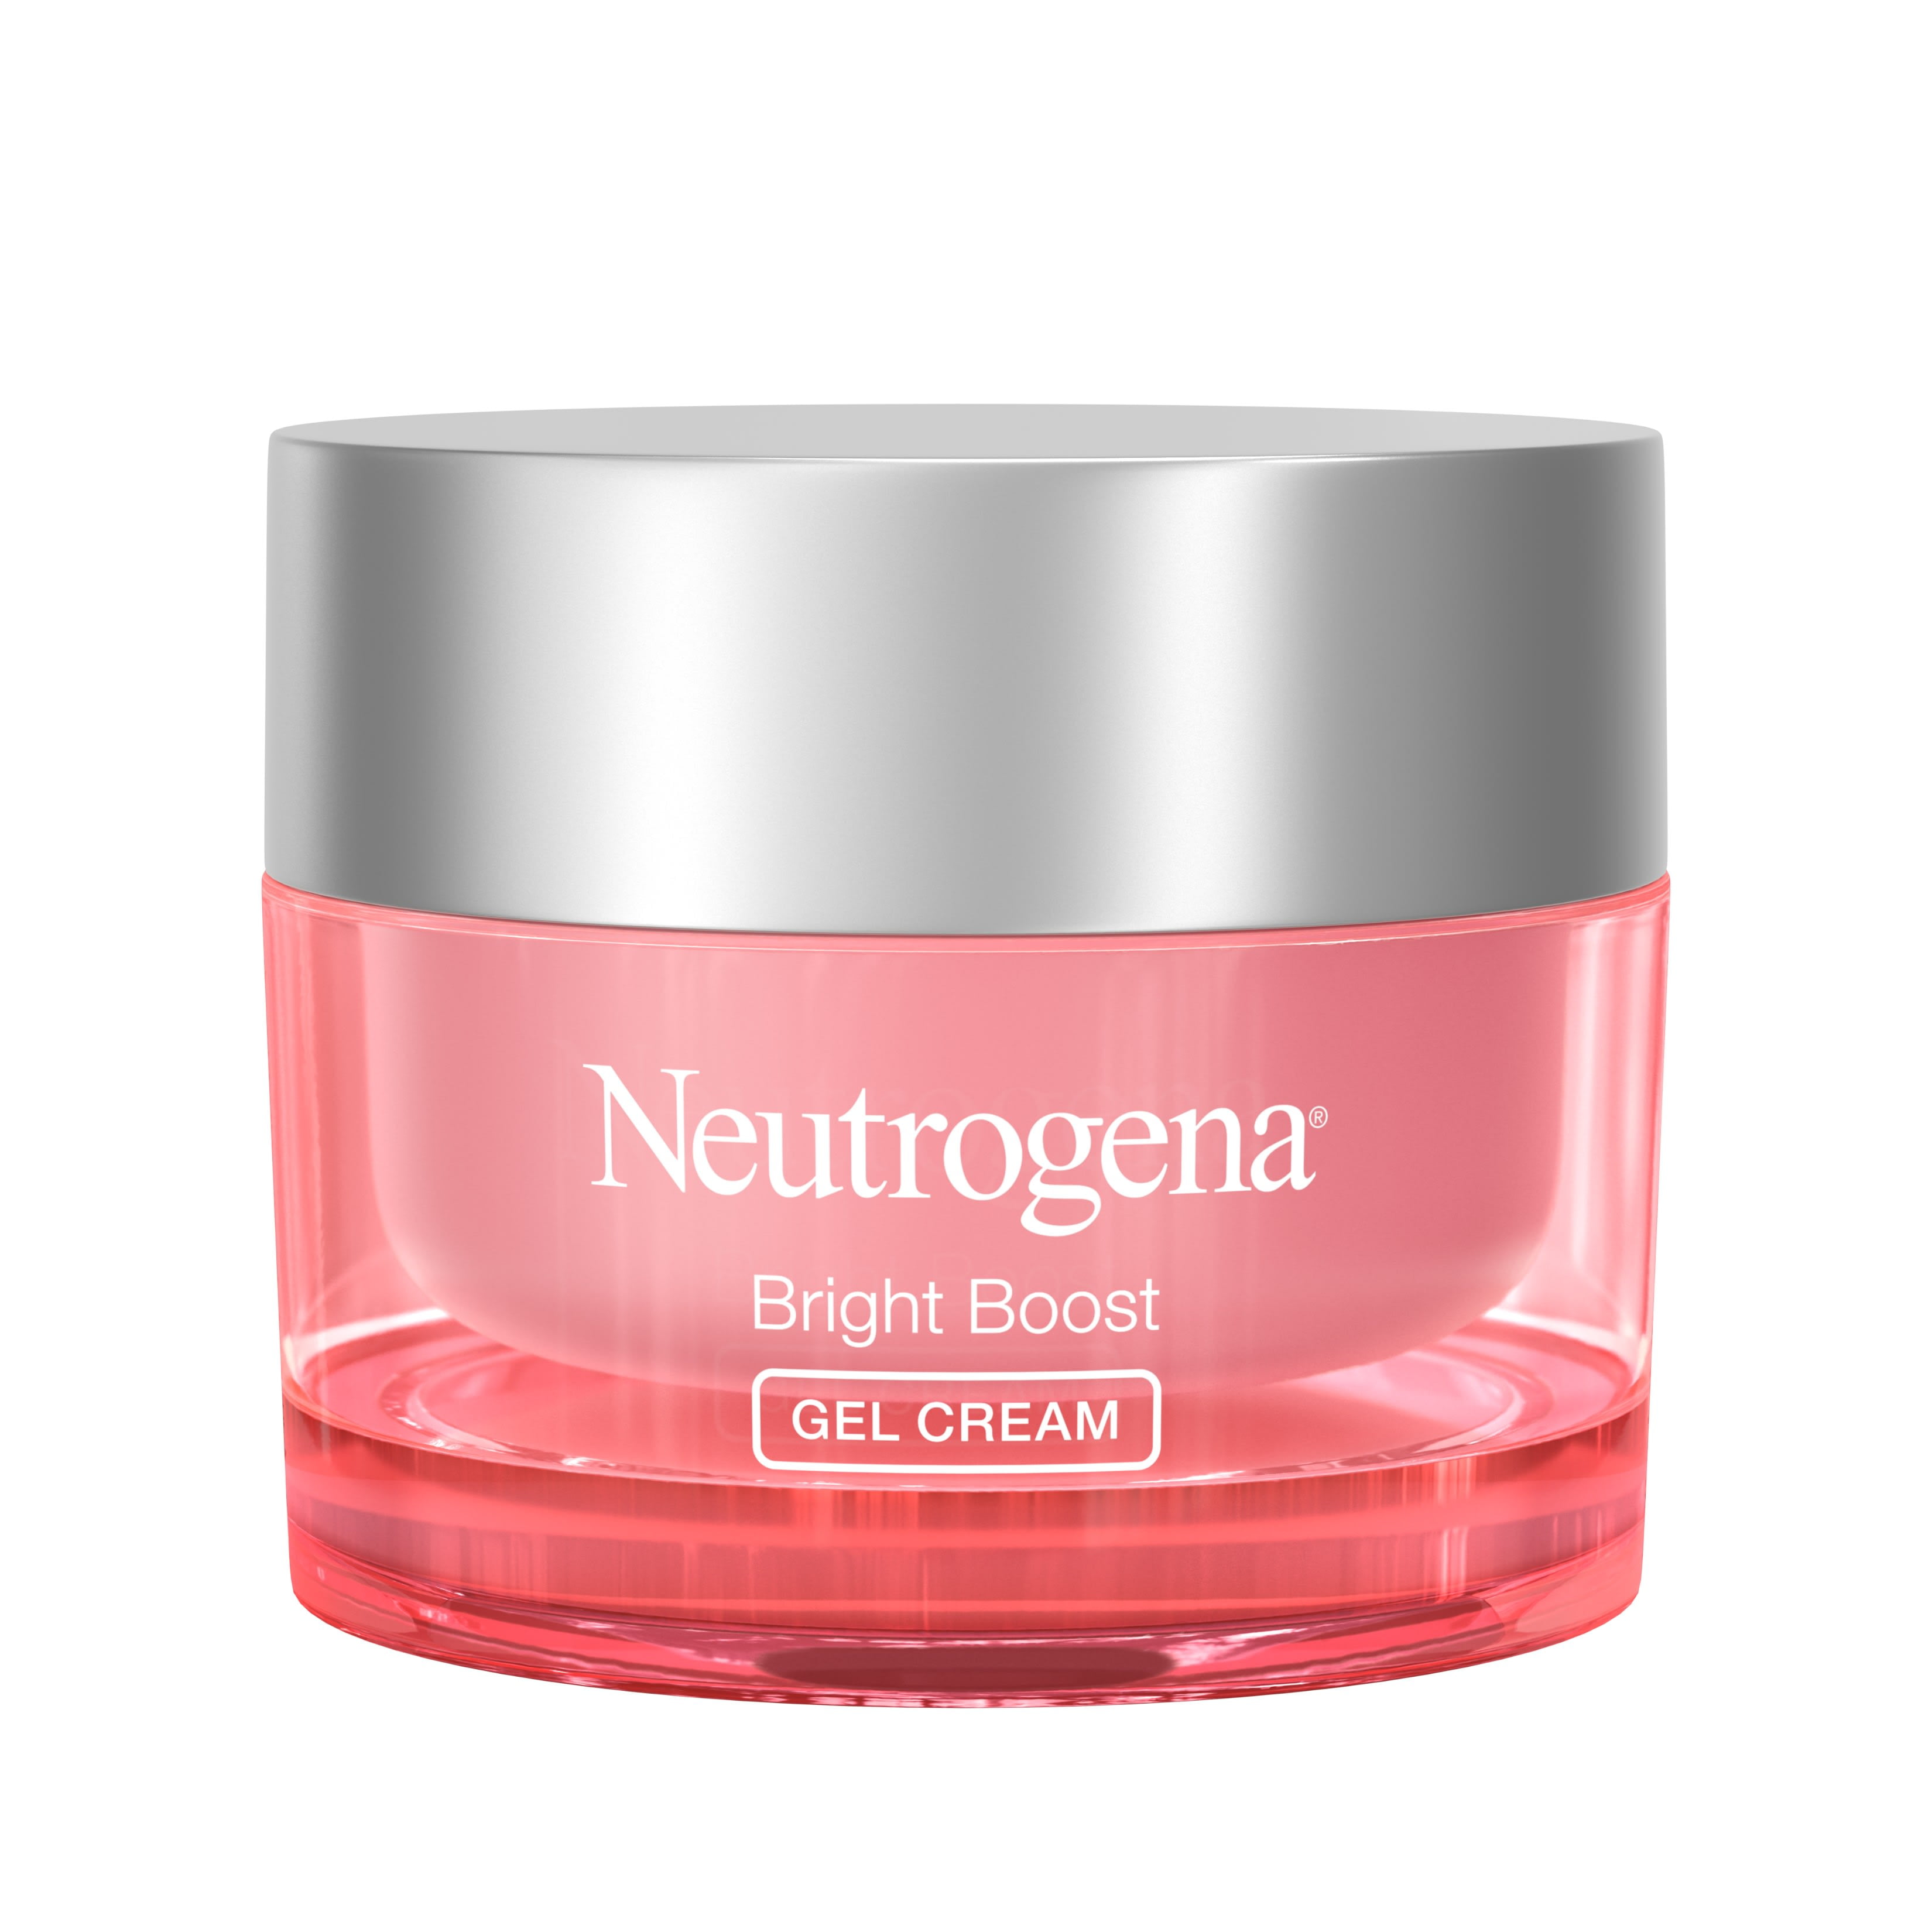 Neutrogena Bright Boost Brightening Gel Moisturizer Face Cream, 1.7 fl. oz -